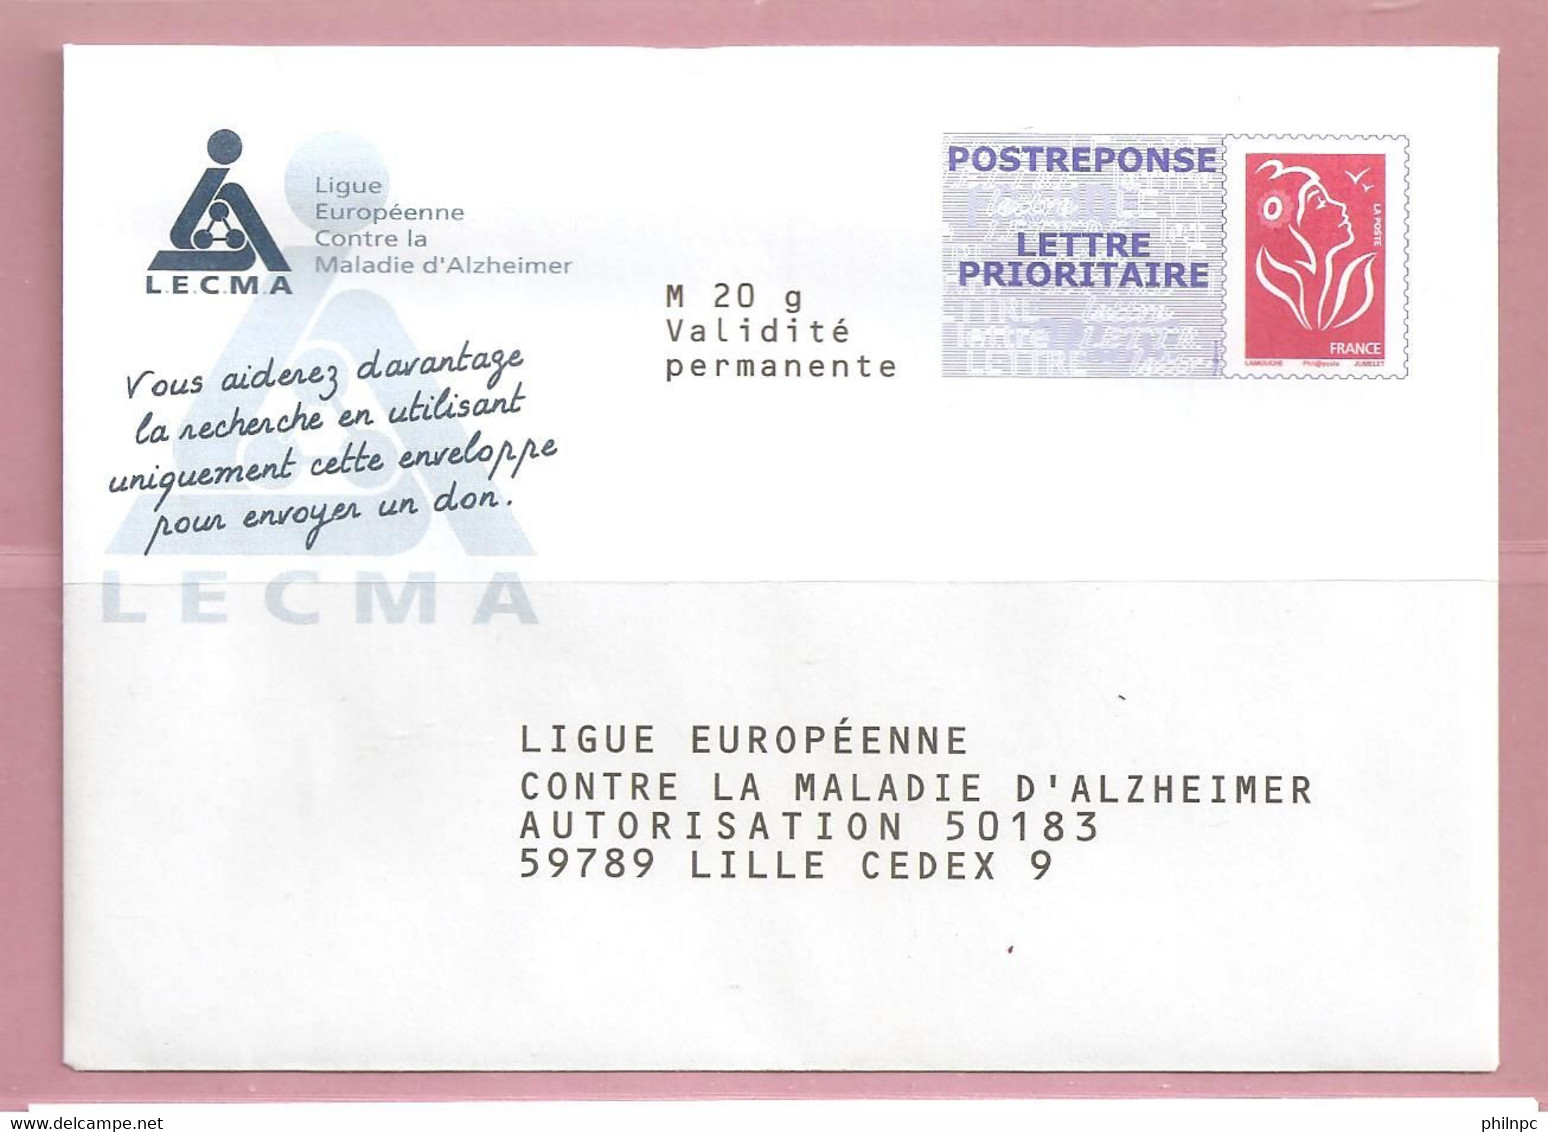 France, Prêt à Poster Réponse, Postréponse, 3734A, Lecma, Ligue Euro Contre La Maladie D'Alzheimer, Marianne De Lamouche - Prêts-à-poster: Réponse /Lamouche